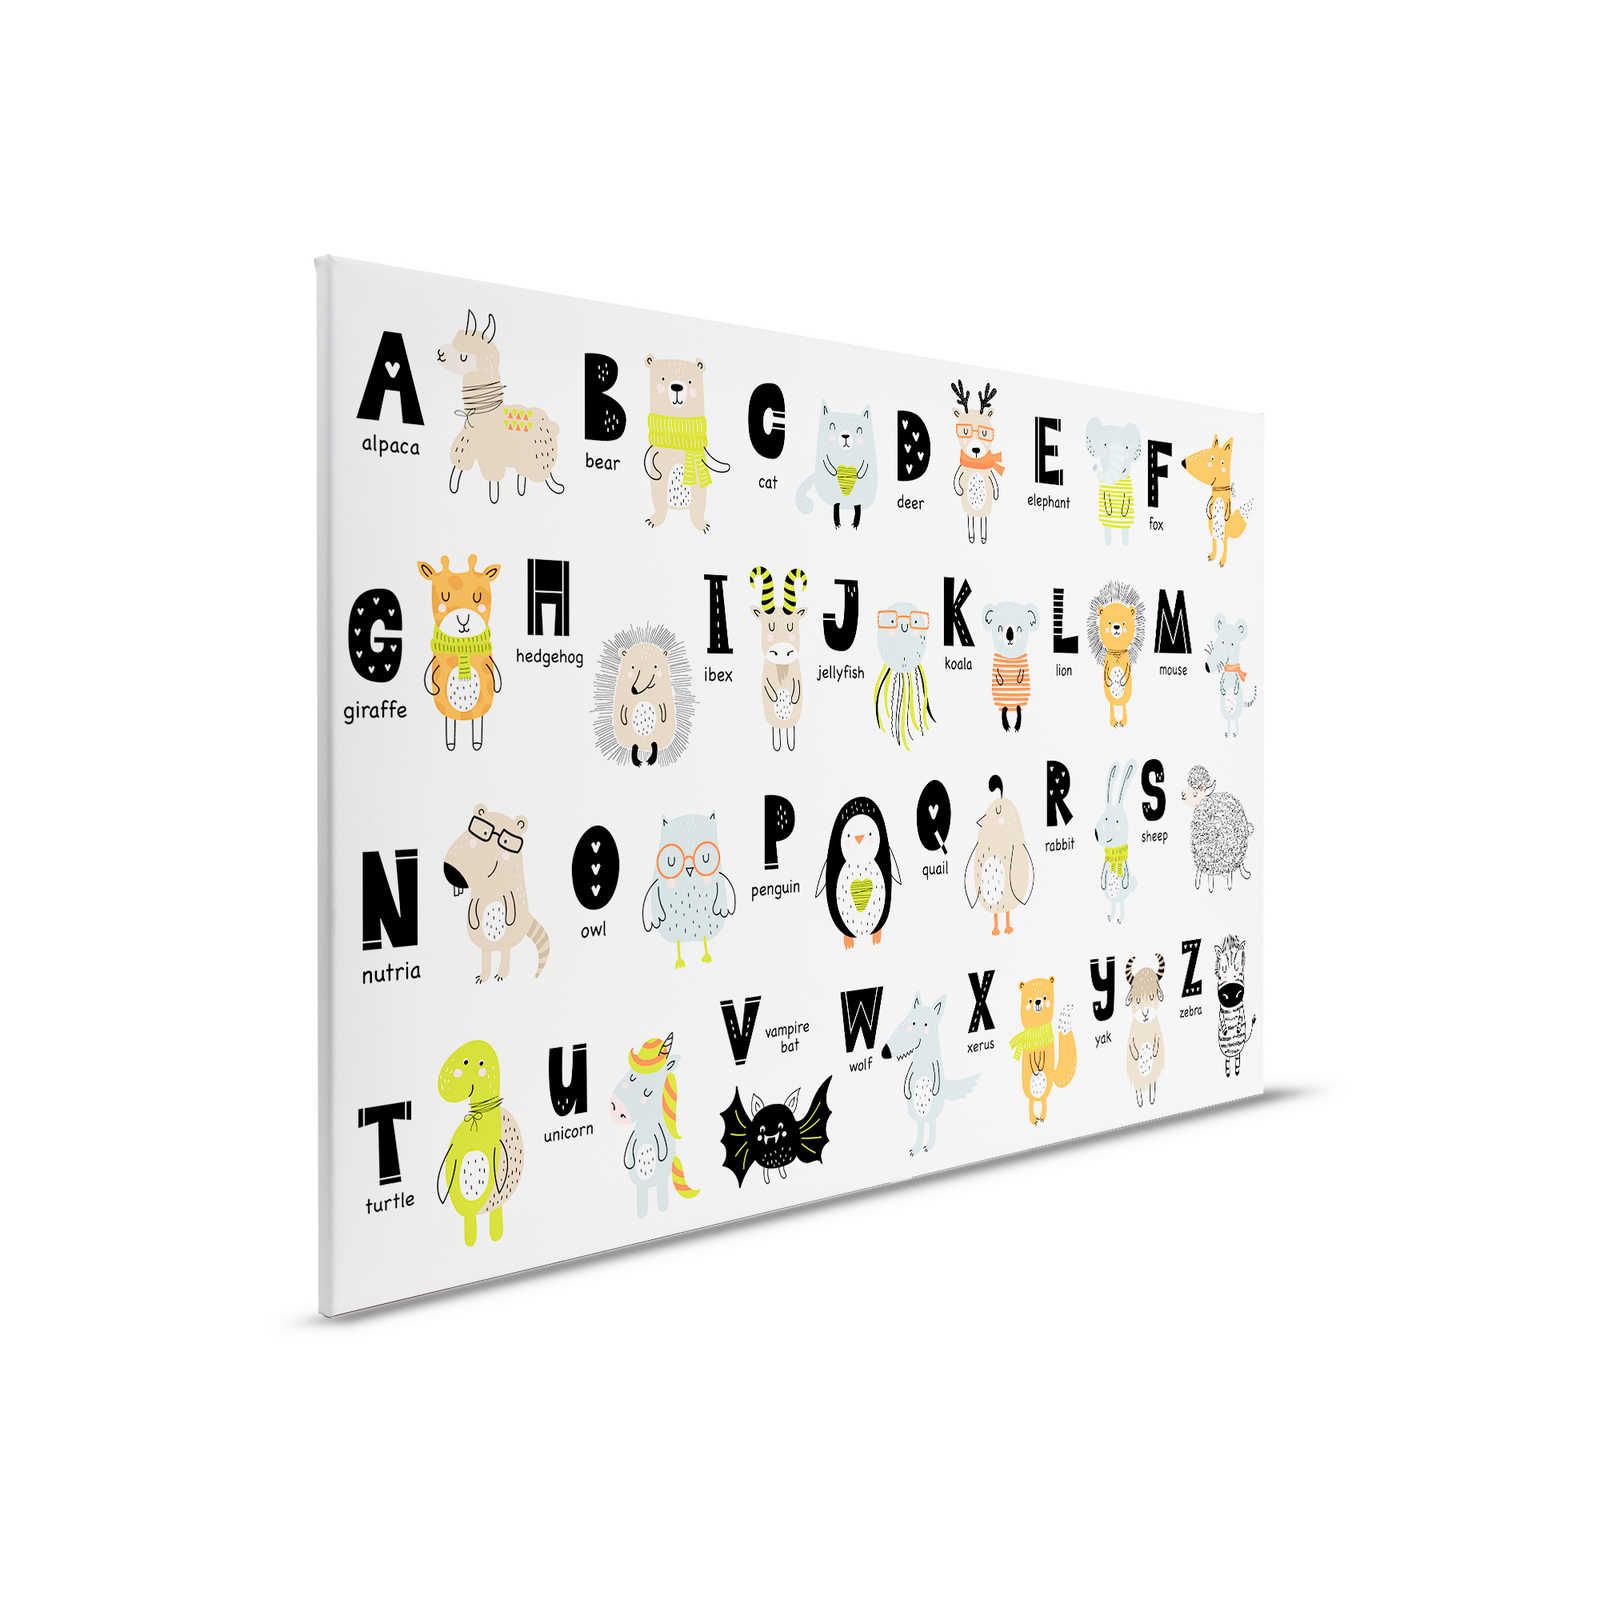         Leinwand Alphabet mit Tieren und Tiernamen – 90 cm x 60 cm
    